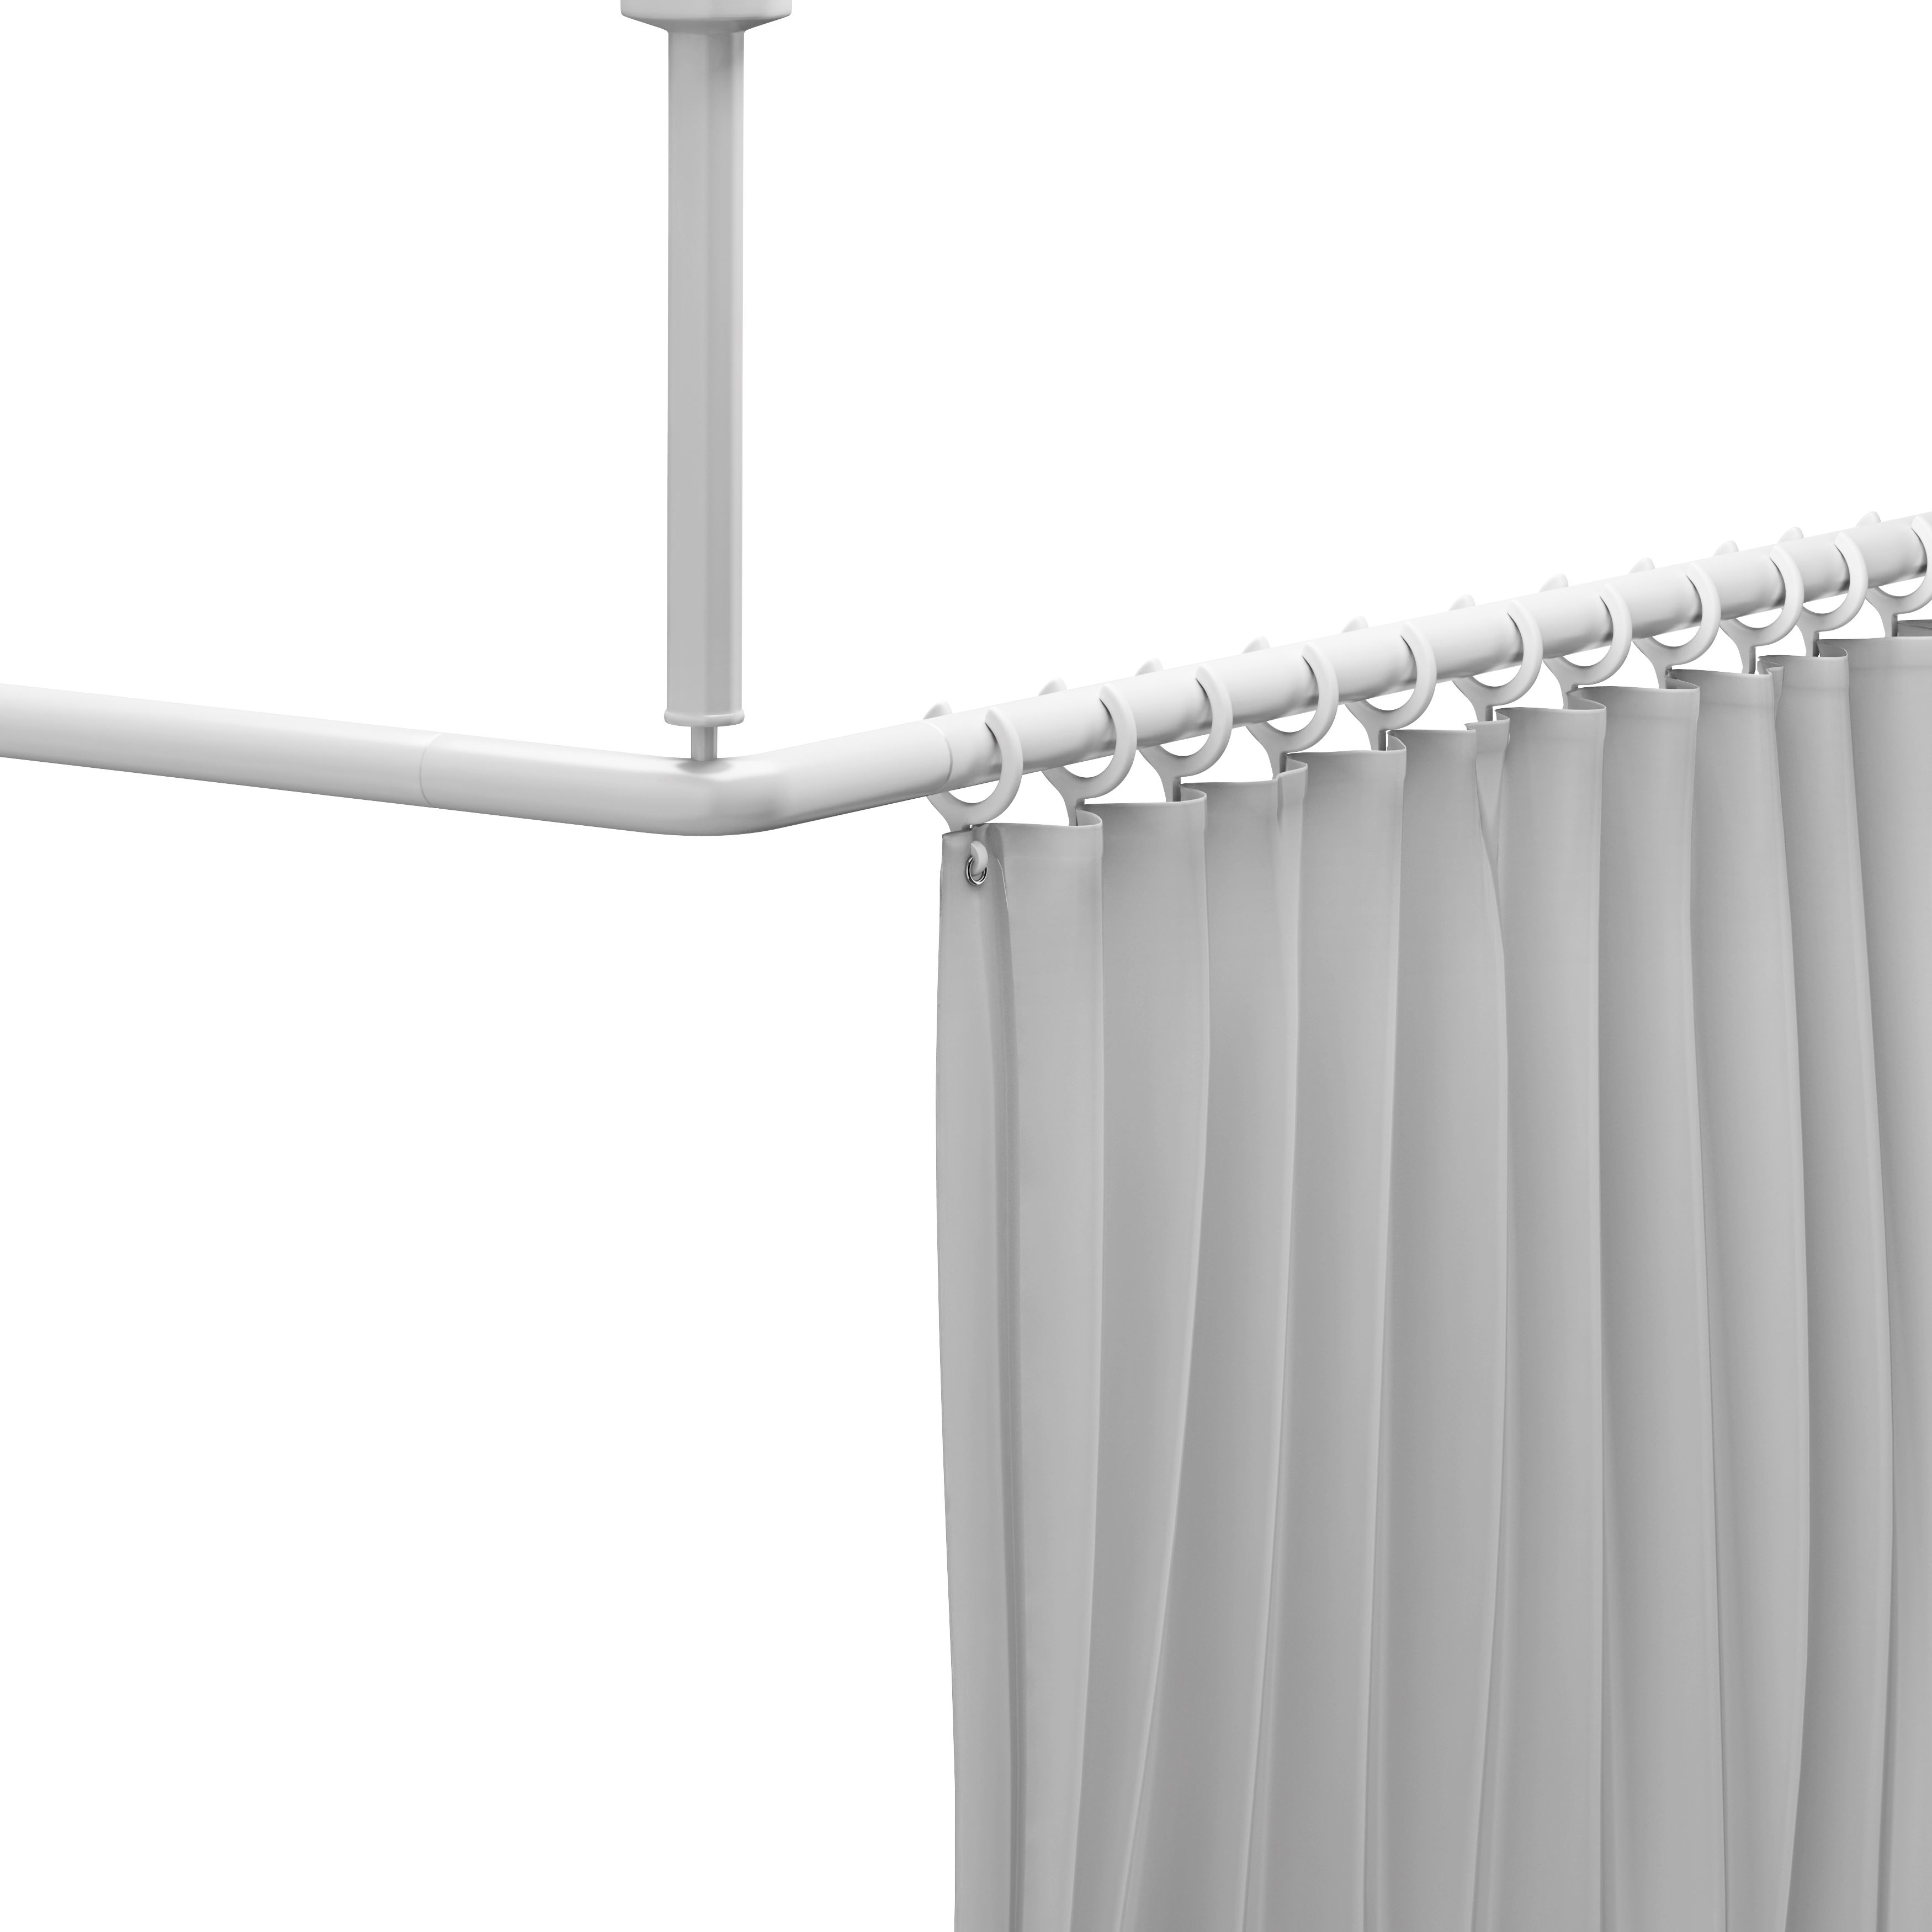 Shower curtain rail, 17.9" x 17.9"